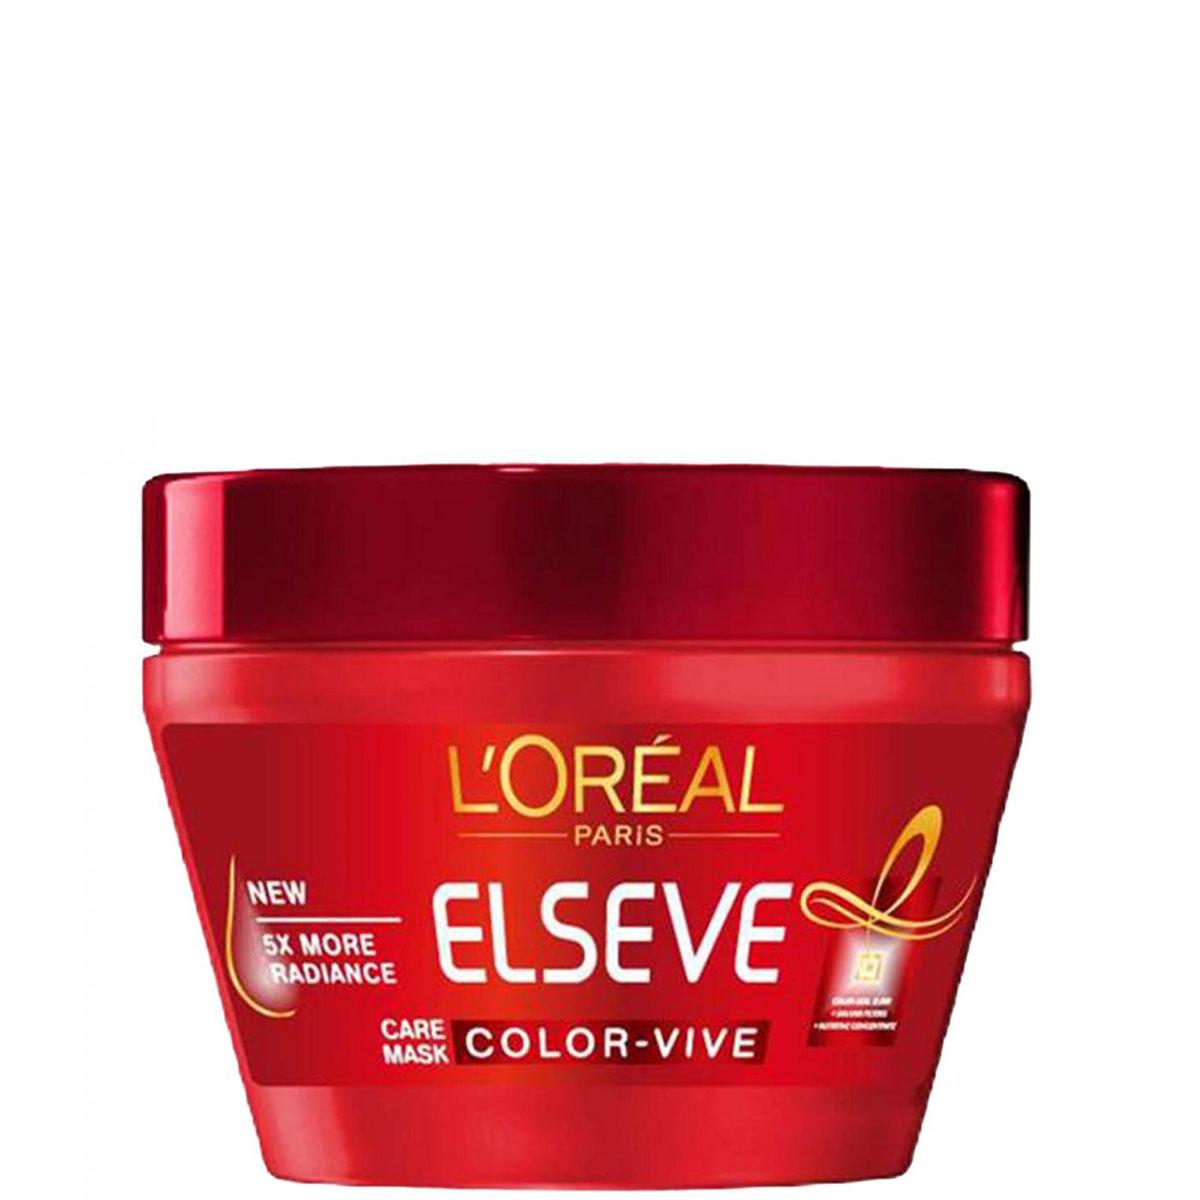 ماسک مو مخصوص موهای رنگ شده کالروایو السو - COLOR VIVE Mask